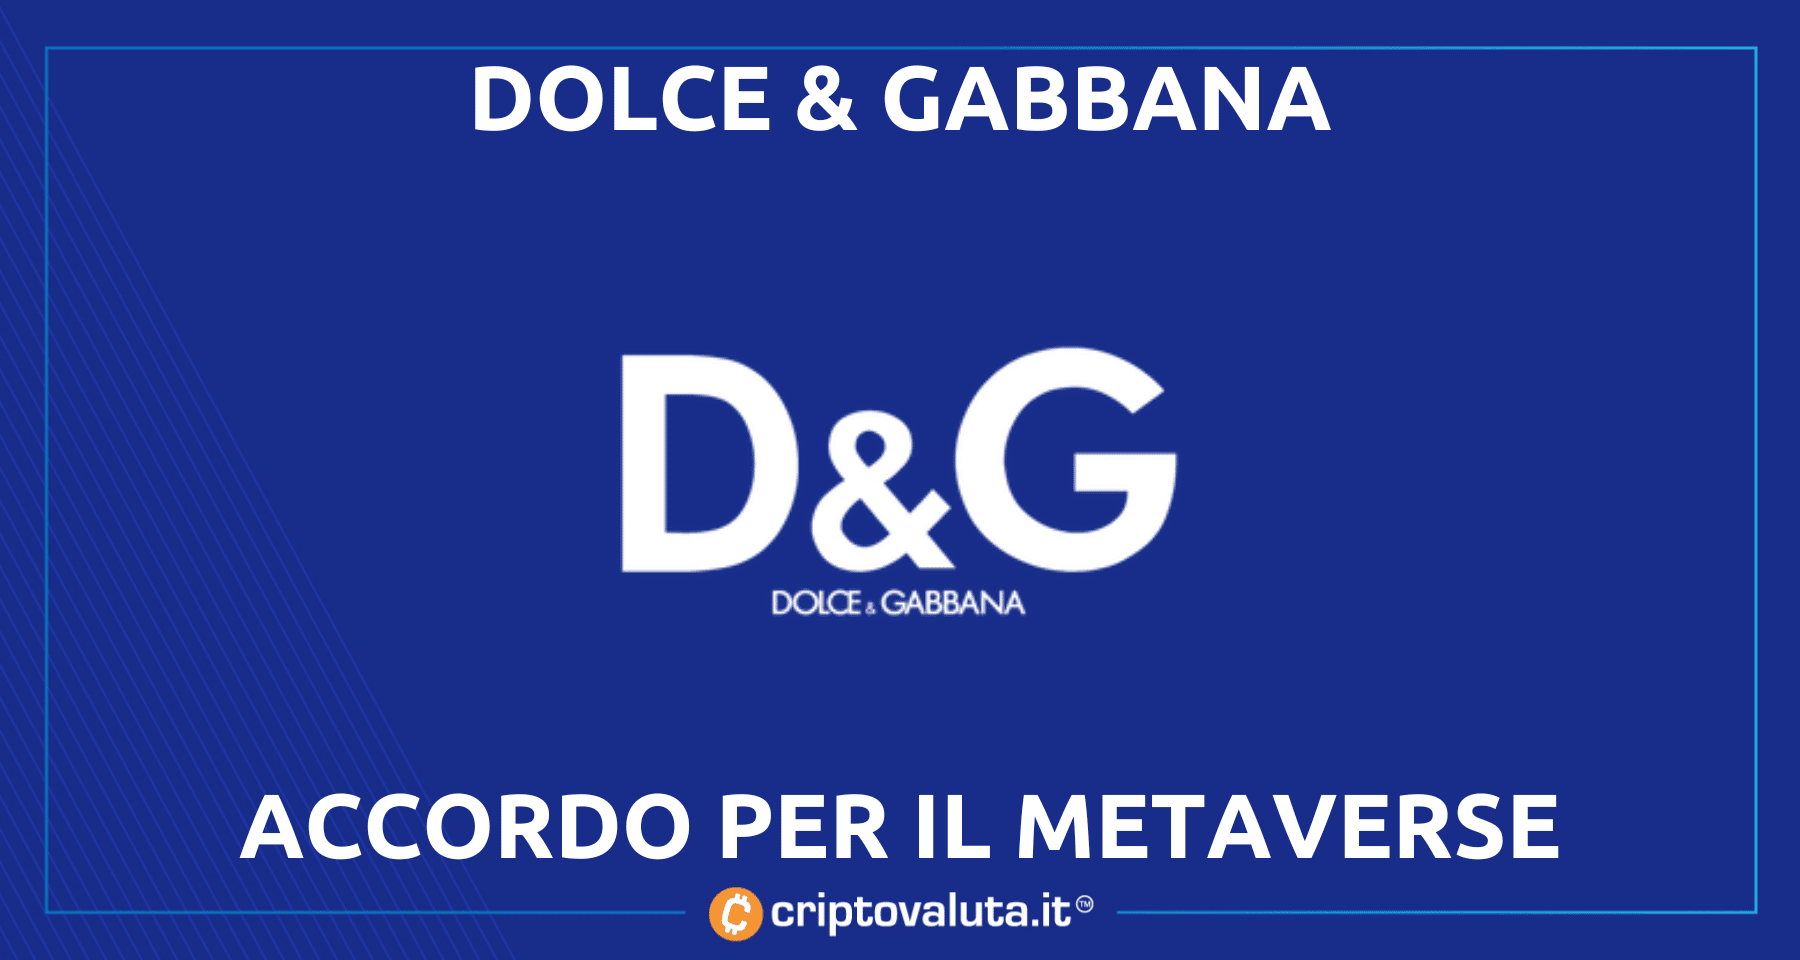 Dolce e Gabbana in NFT e Metaverso! | La collaborazione è milionaria